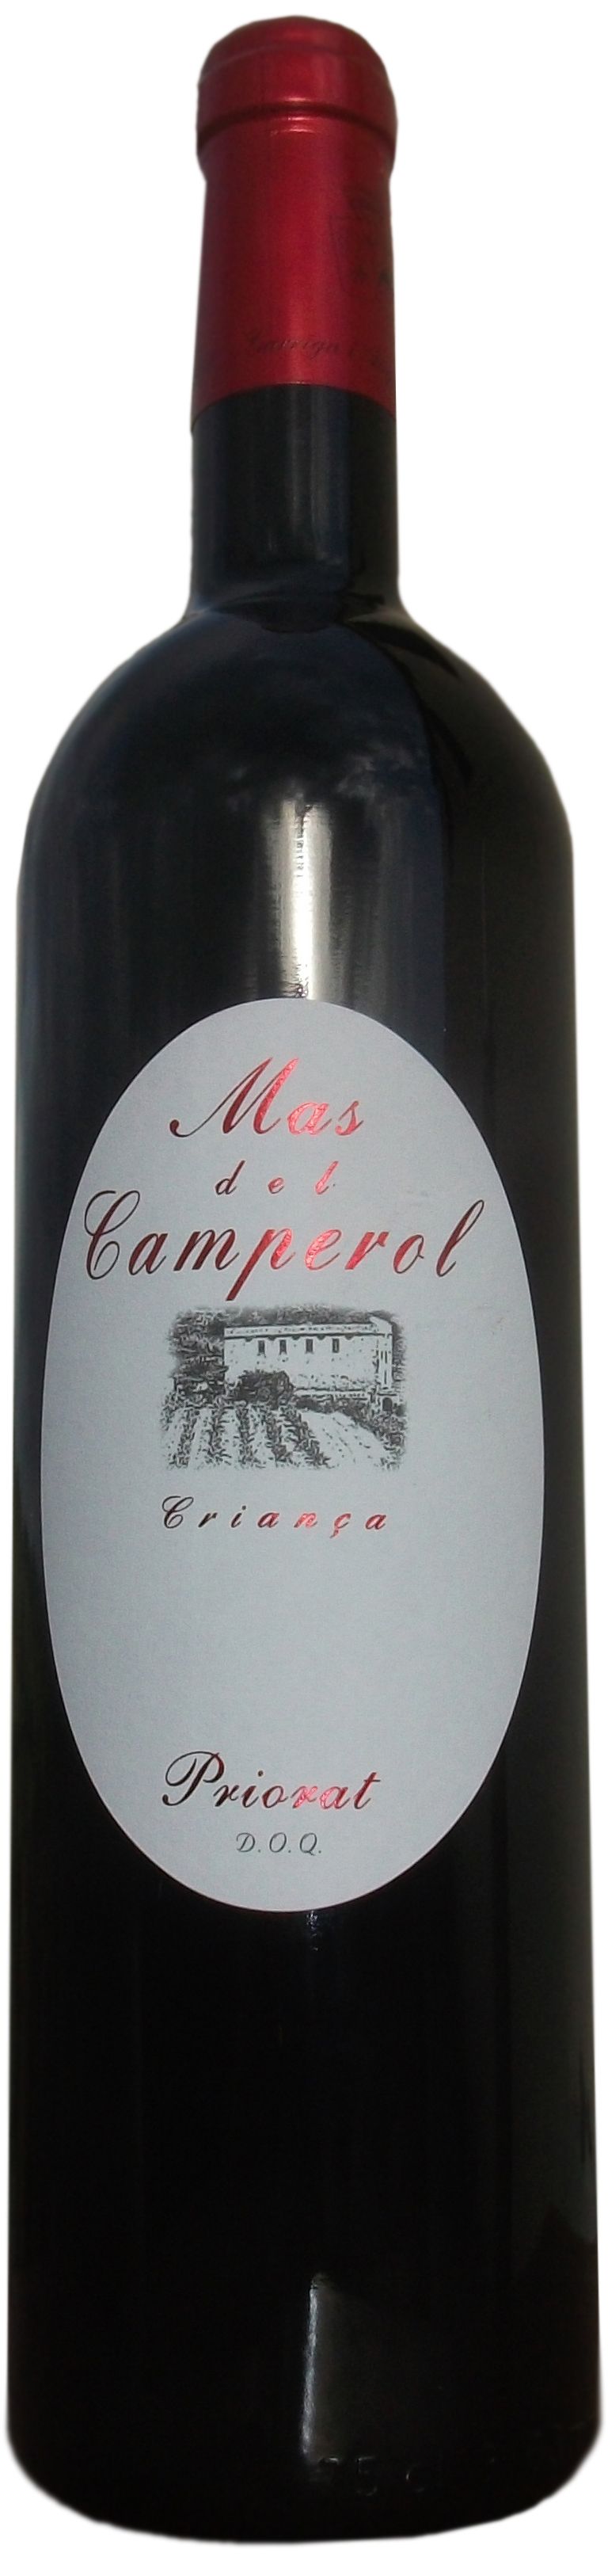 Mas Garrian, Mas Del Camperol, 2005